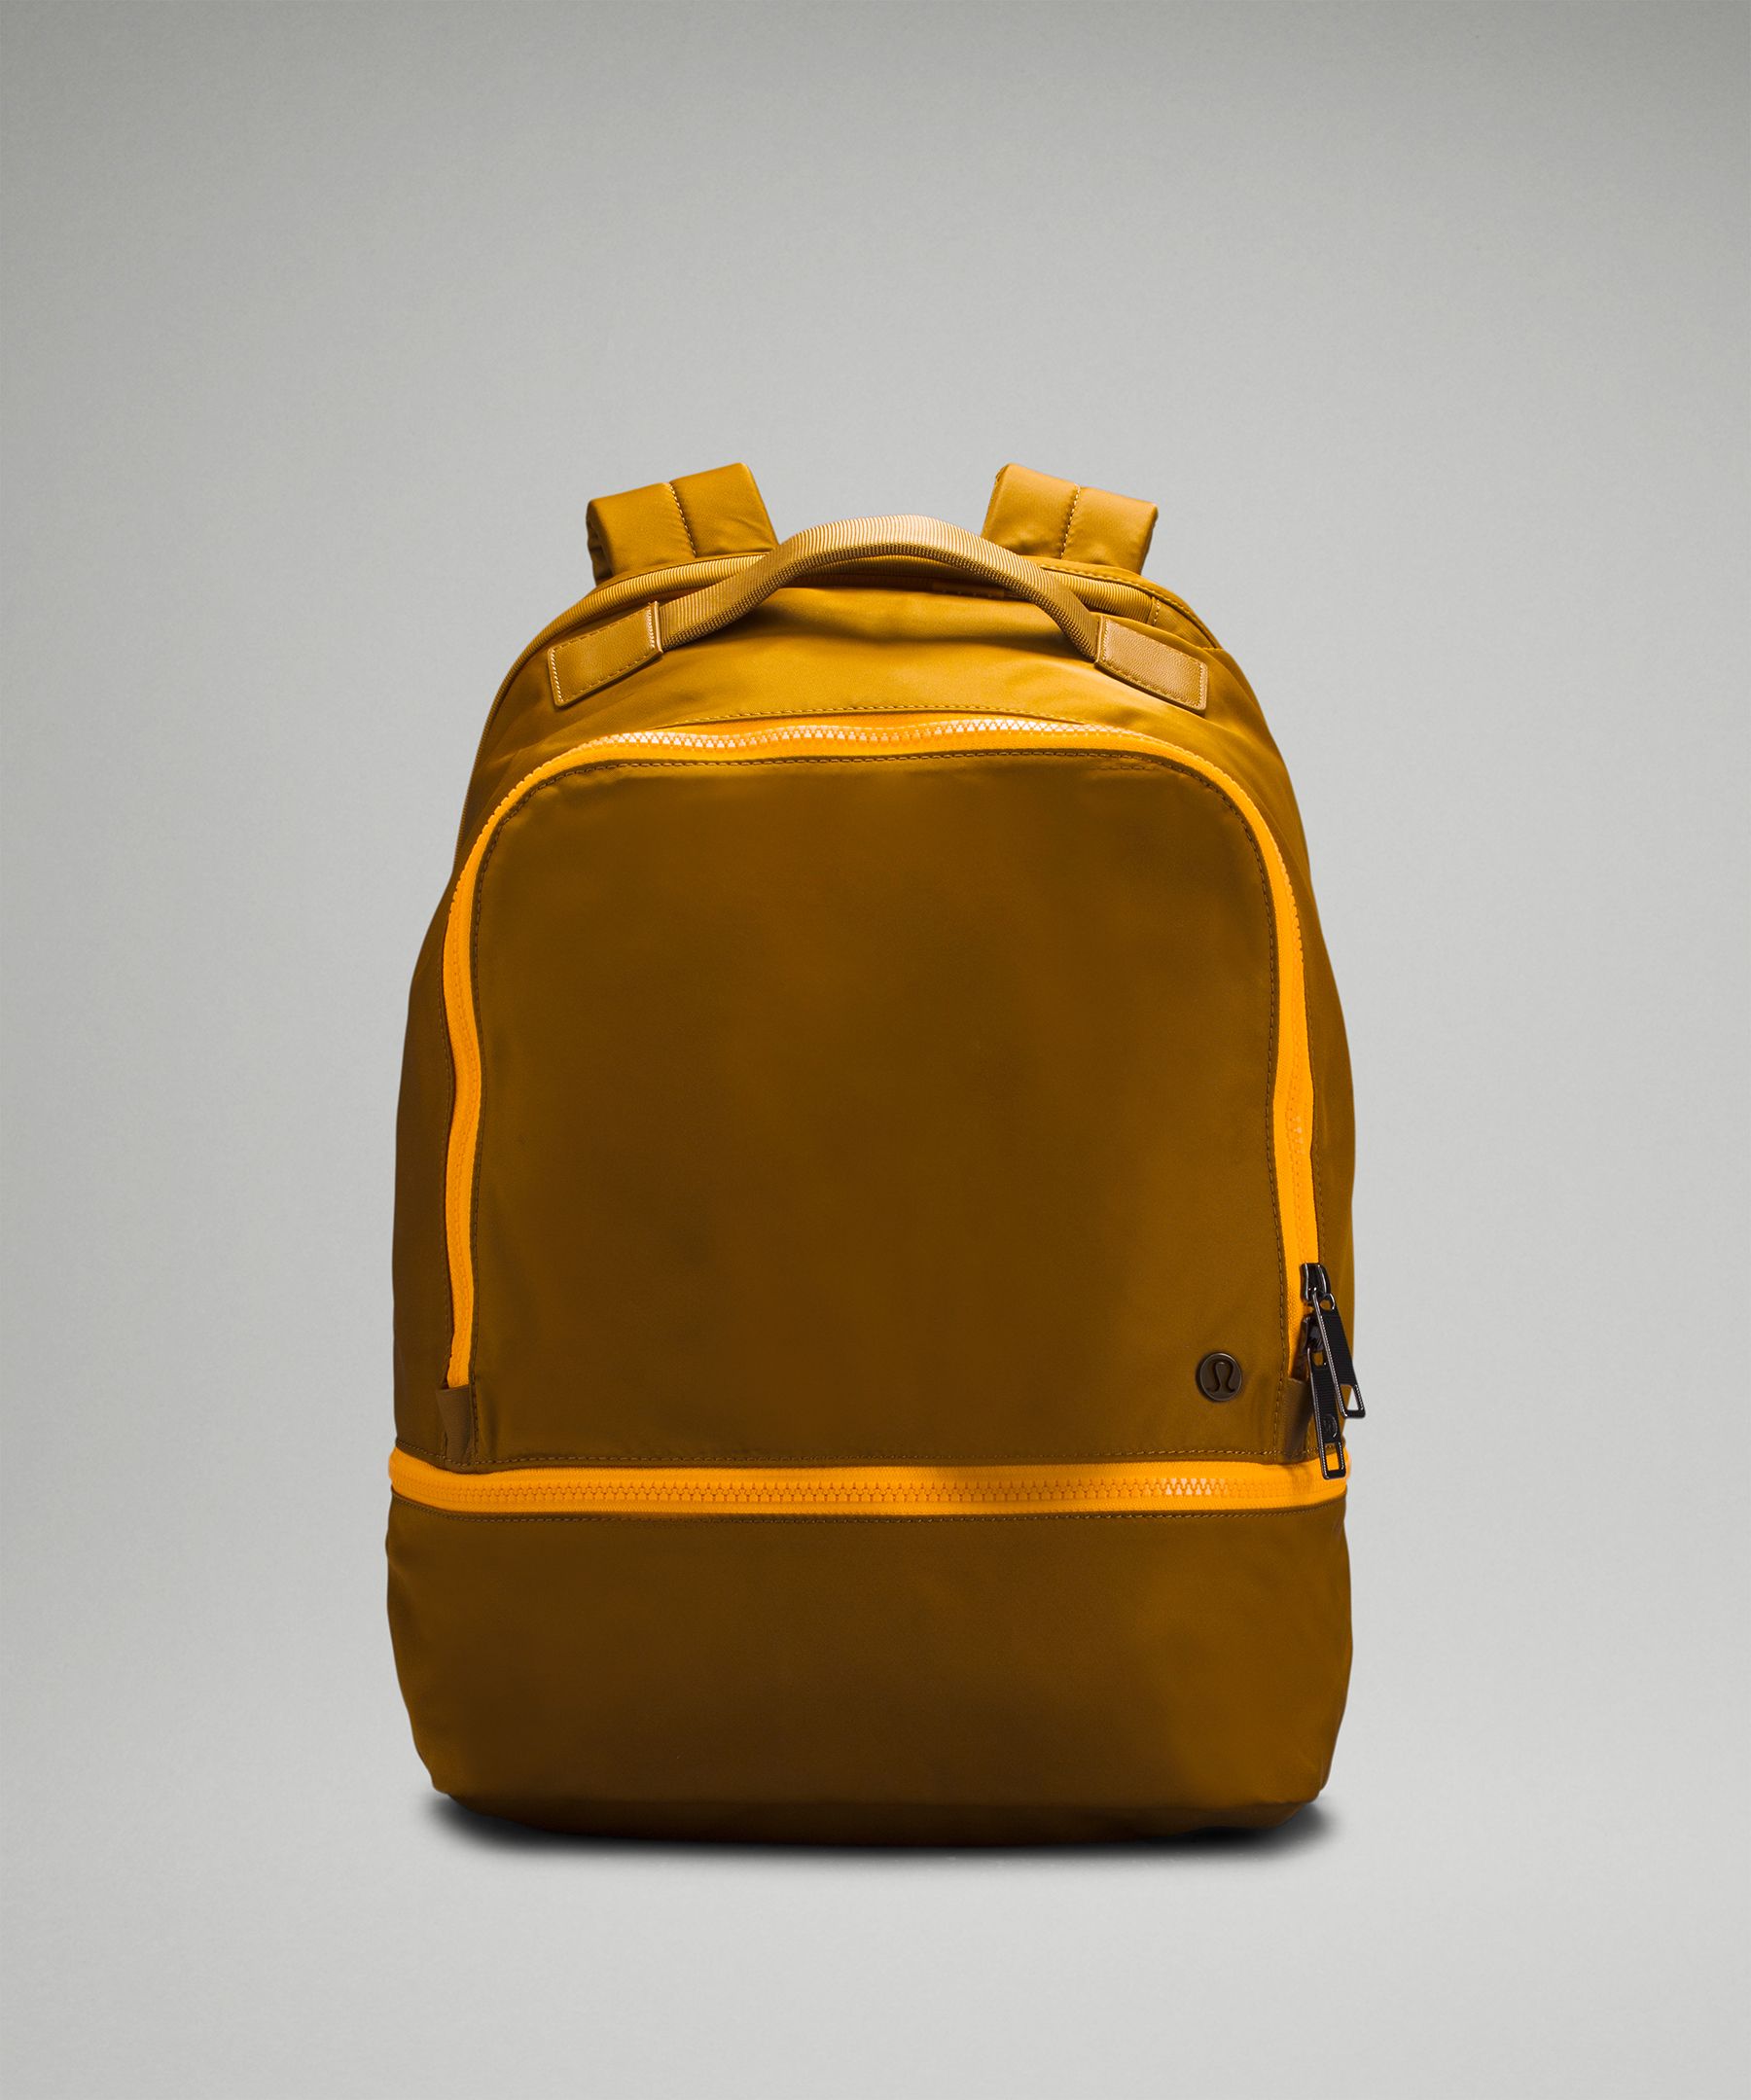 Lululemon City Adventurer Backpack 17l In Gold Spice